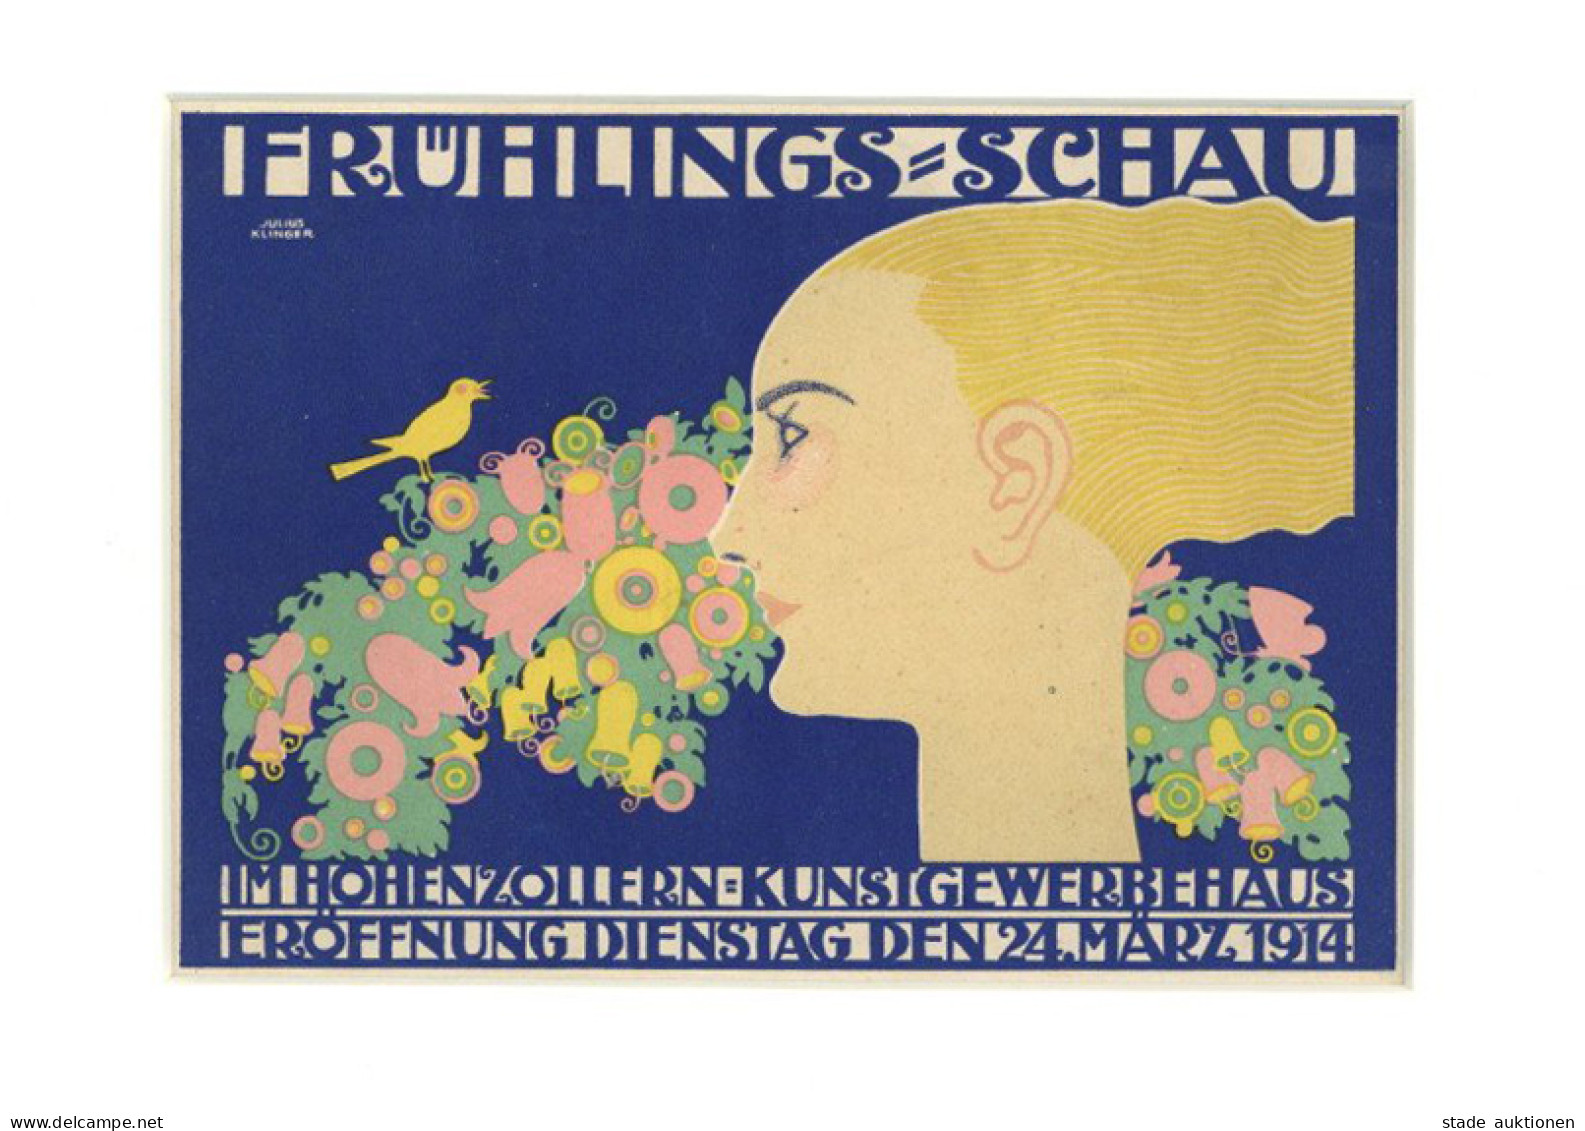 Werbung Kleinplakat Frühlings-Schau Im Hohenzollern Kunstgewerbehaus 24. März 1914 I-II Publicite - Publicidad